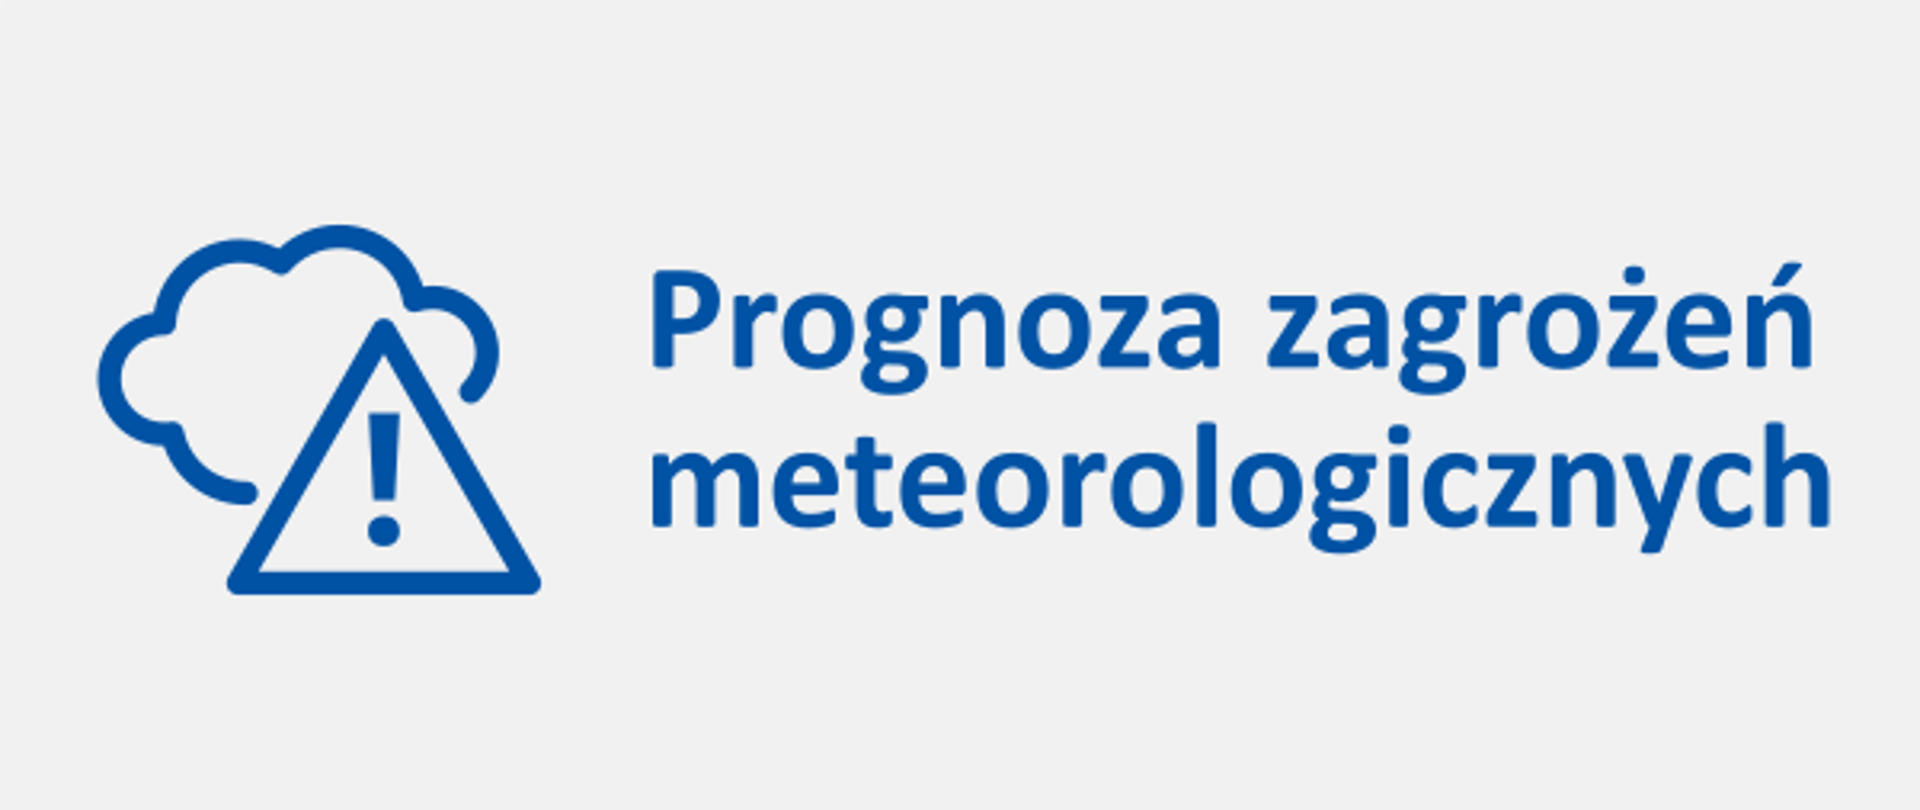 Grafika informacyjna - napis "Prognoza zagrożeń meteorologicznych" oraz symbol chmury i trójkąta z wpisanym wykrzyknikiem